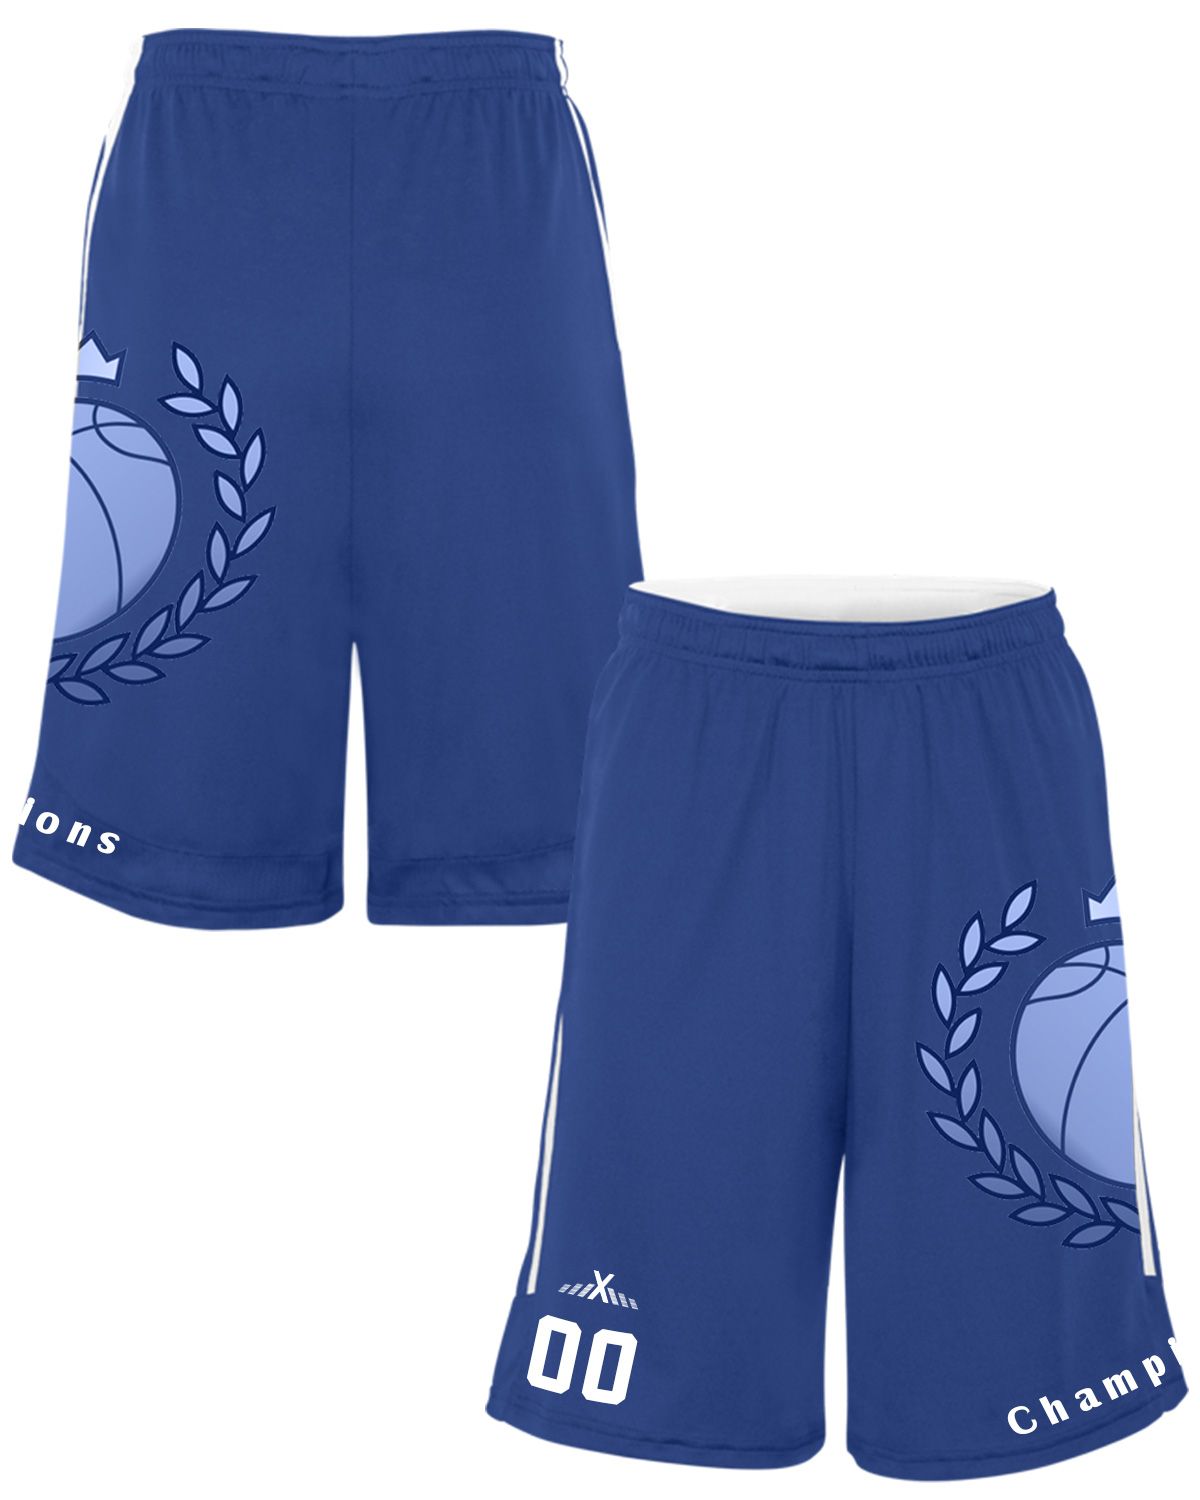 Athleisurex Full Custom Basketball Reversible Shorts - For Women